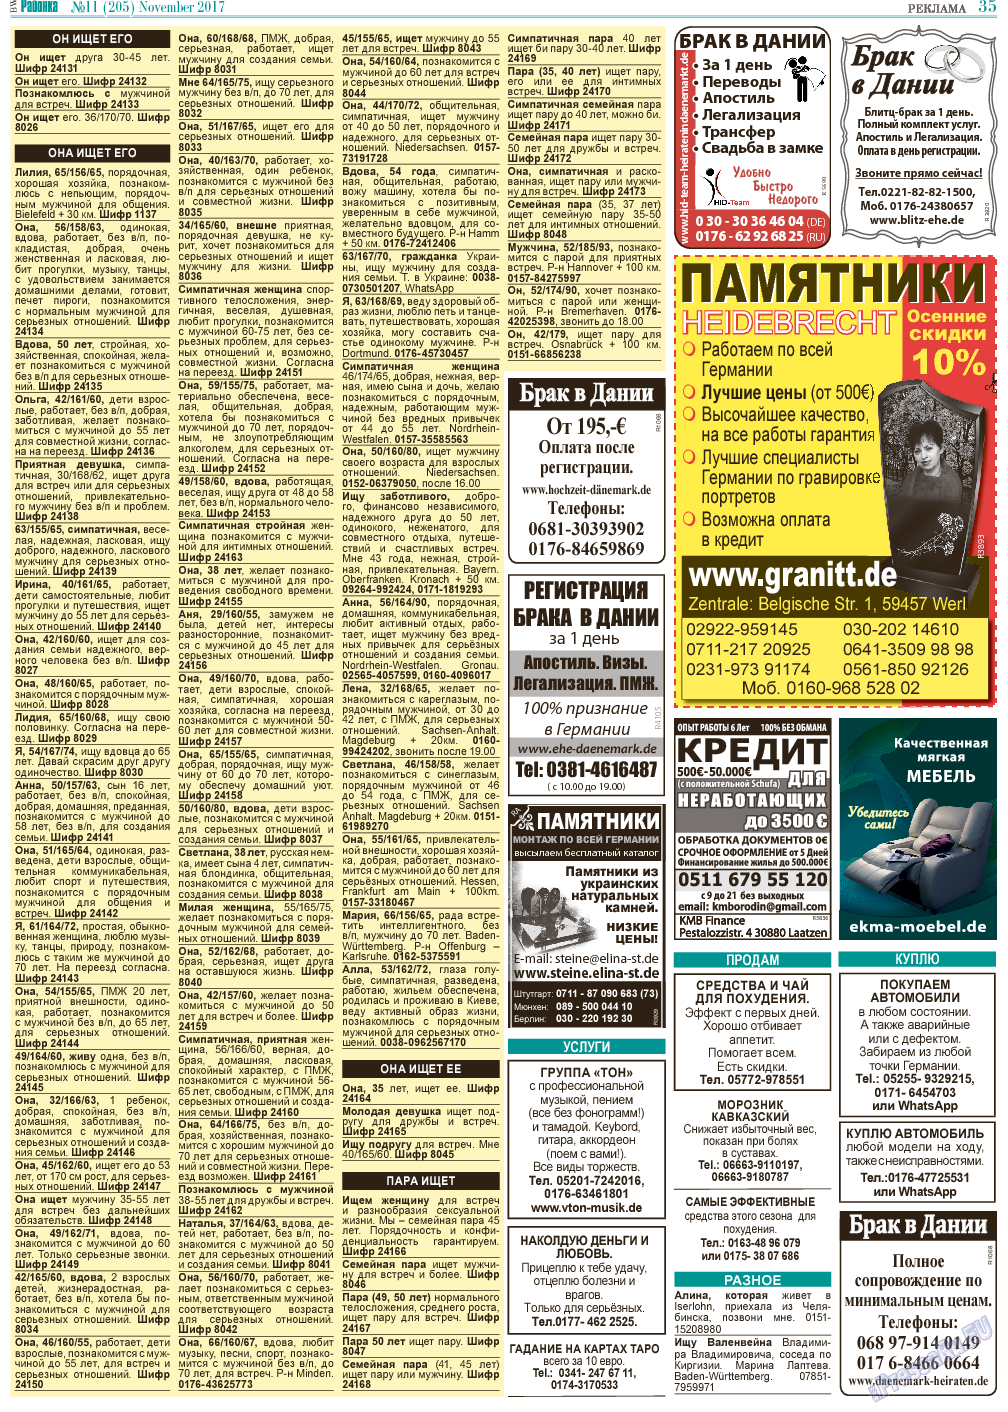 Районка-Süd-West (газета). 2017 год, номер 11, стр. 35